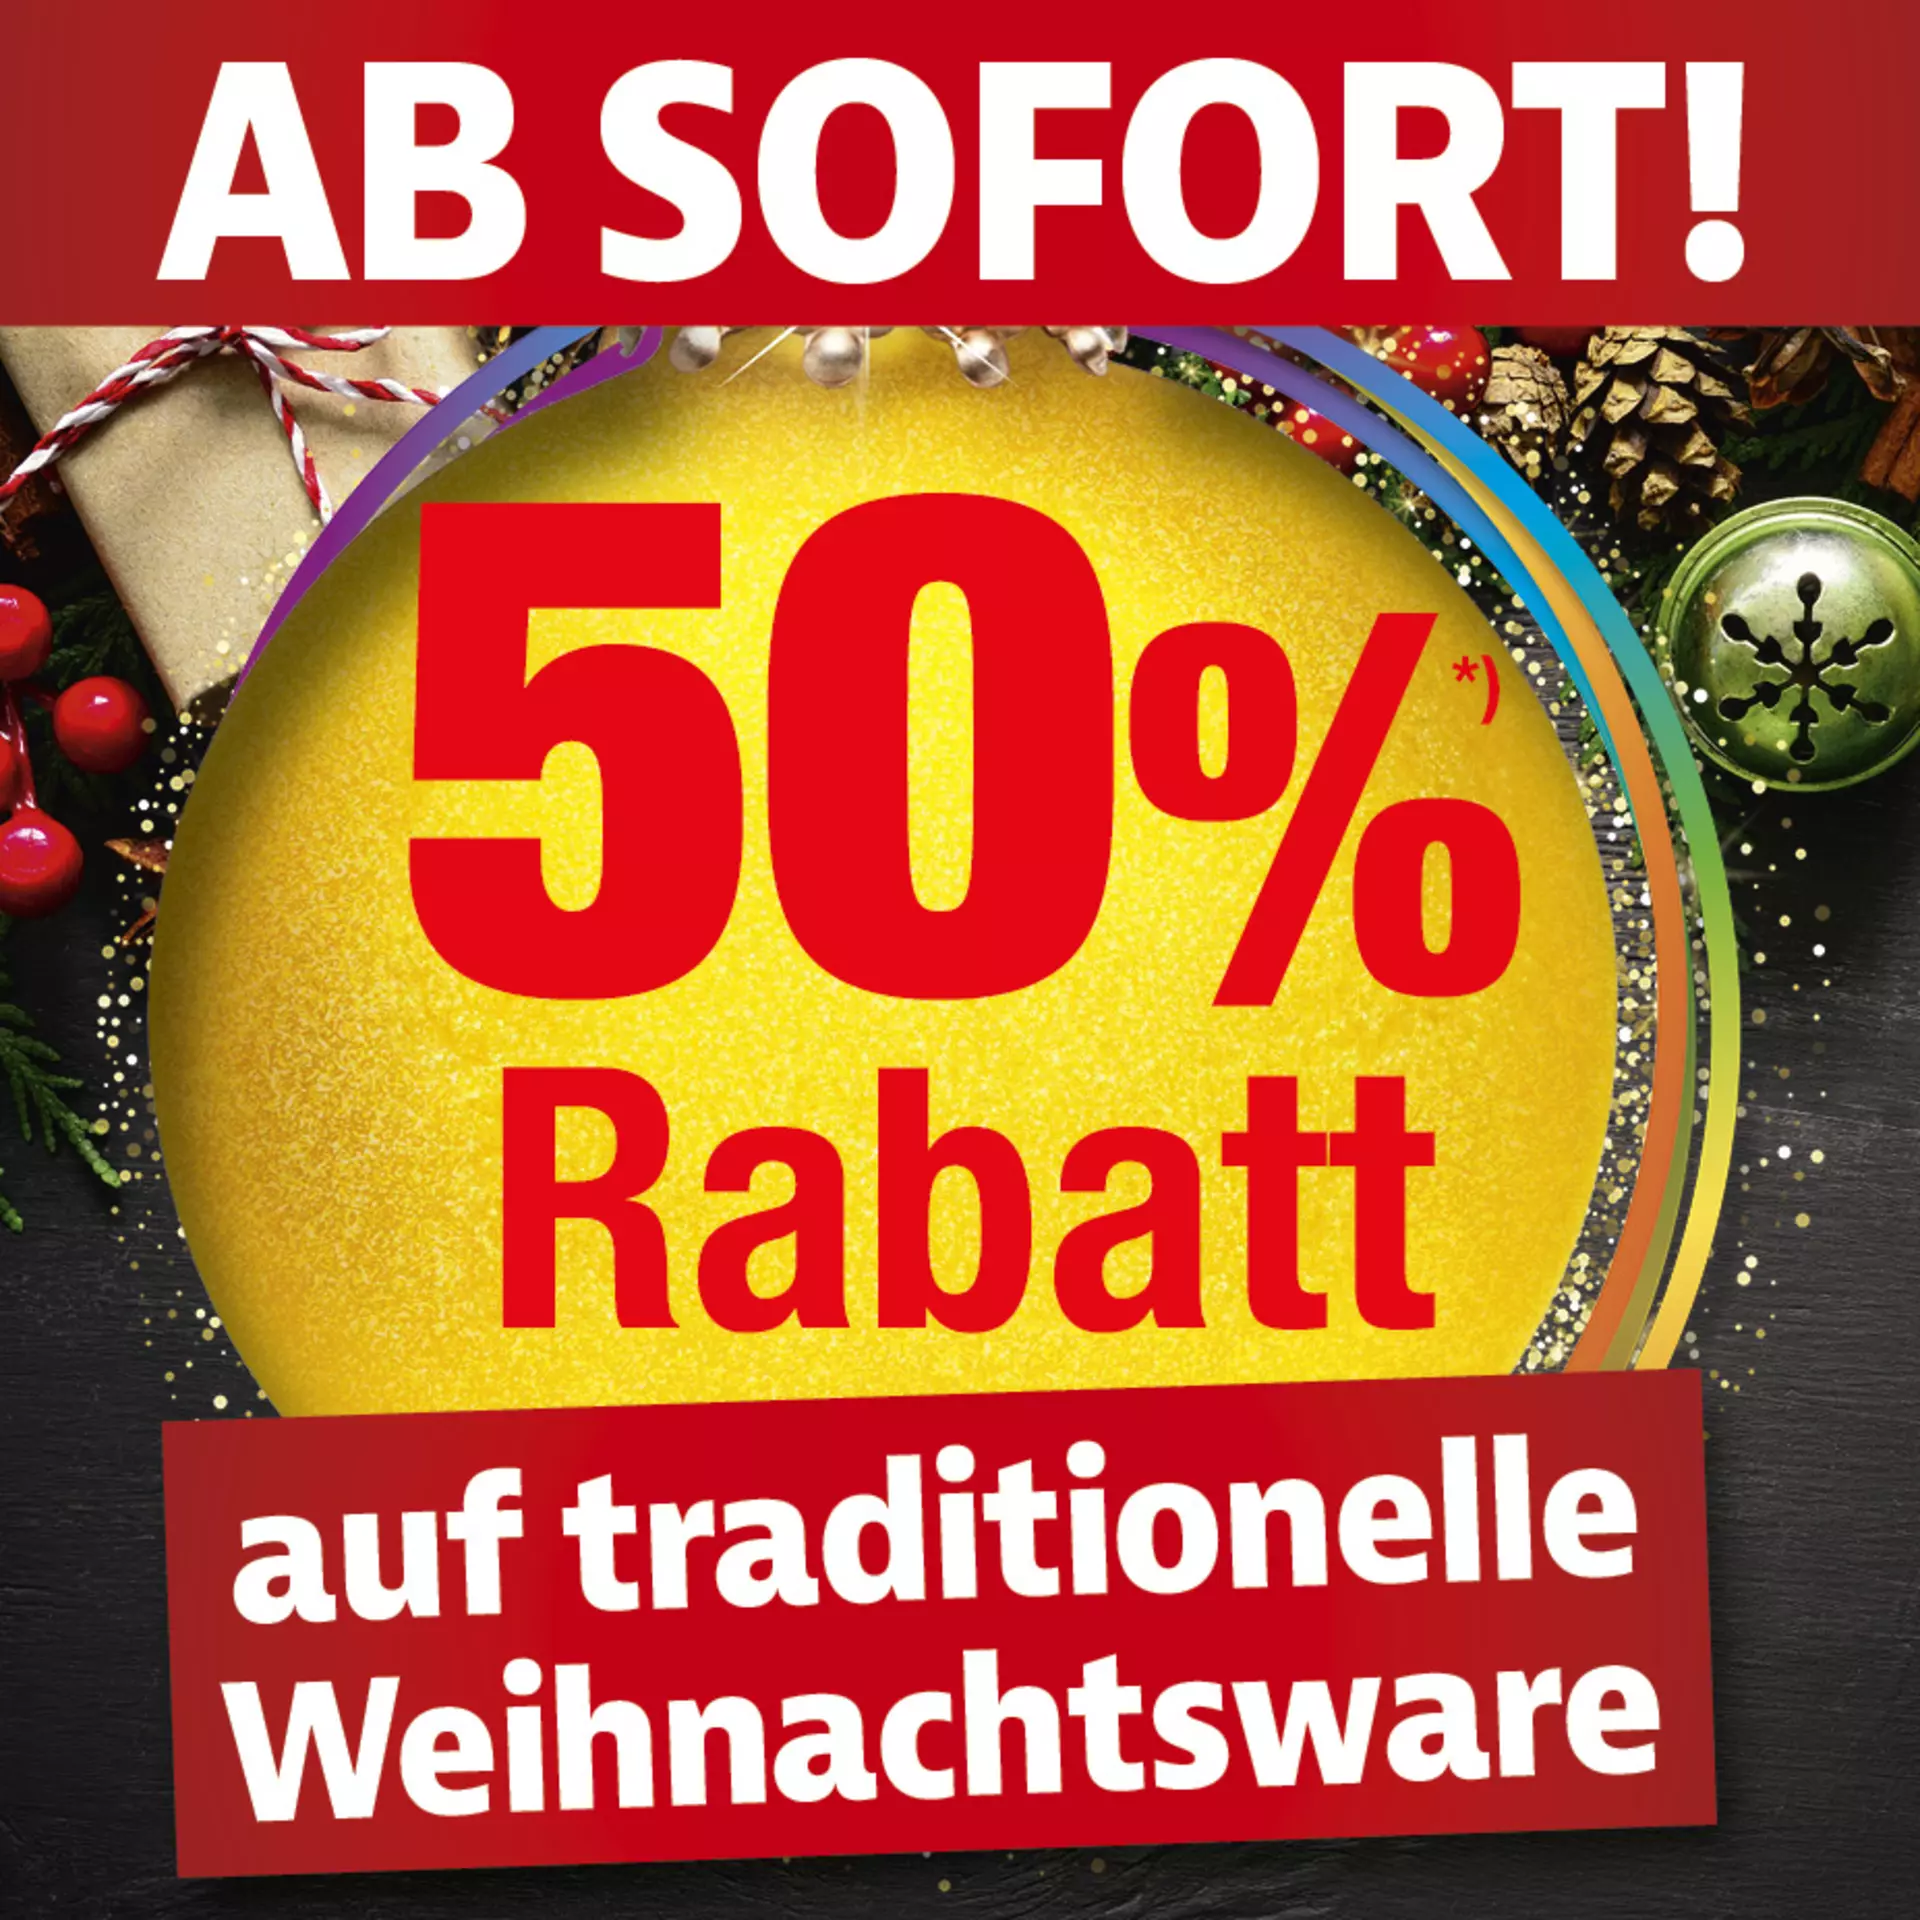 Ab sofort 50% auf traditionelle Weihnachtsartikel - nur bei Möbel Inhofer und auf inhofer.de